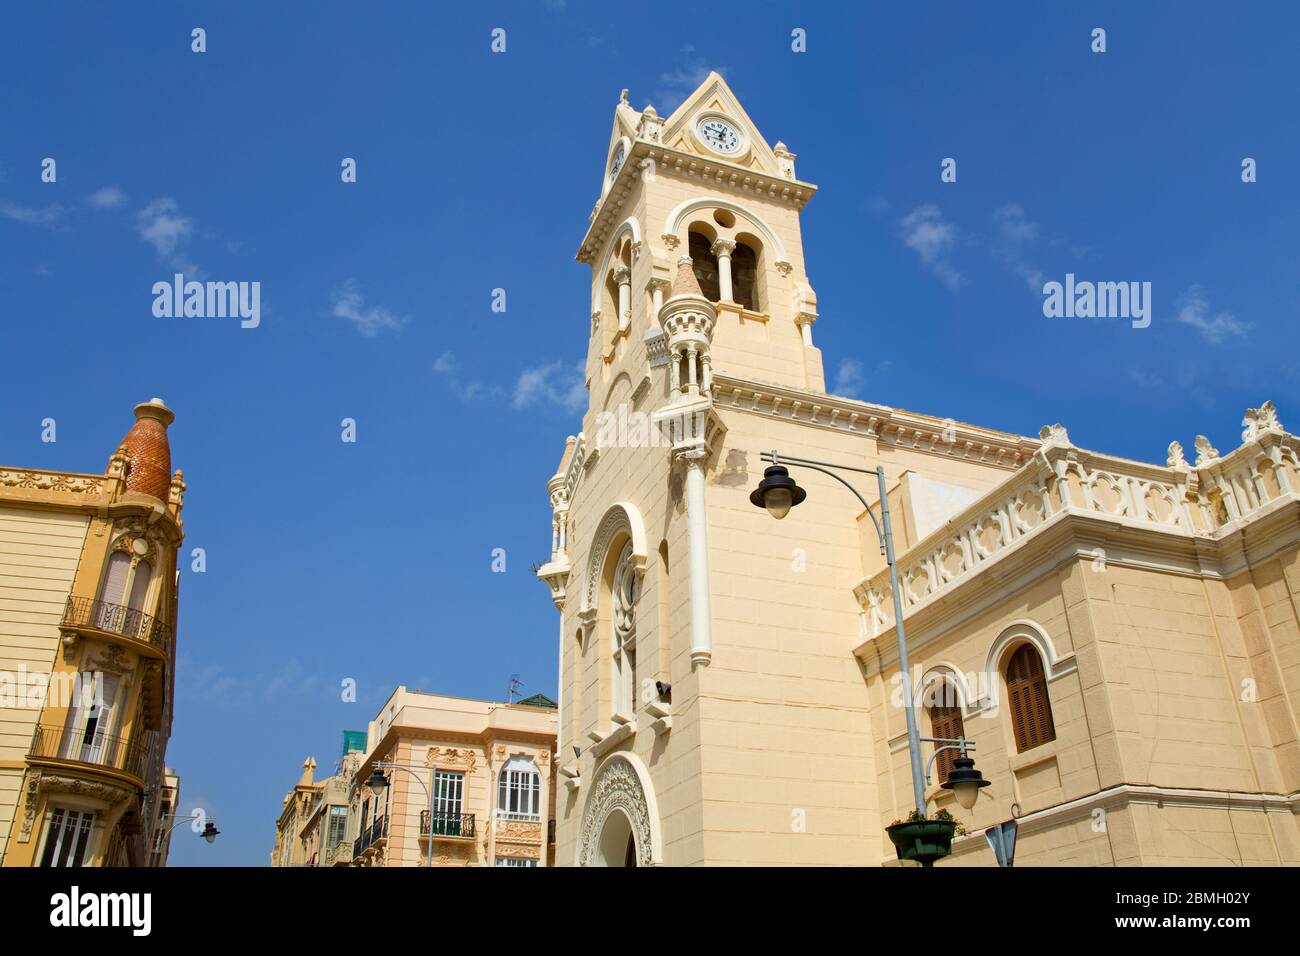 Eglise du Sacré coeur sur la Plaza M. Pelayo, Melilla, Maroc espagnol, Espagne Banque D'Images